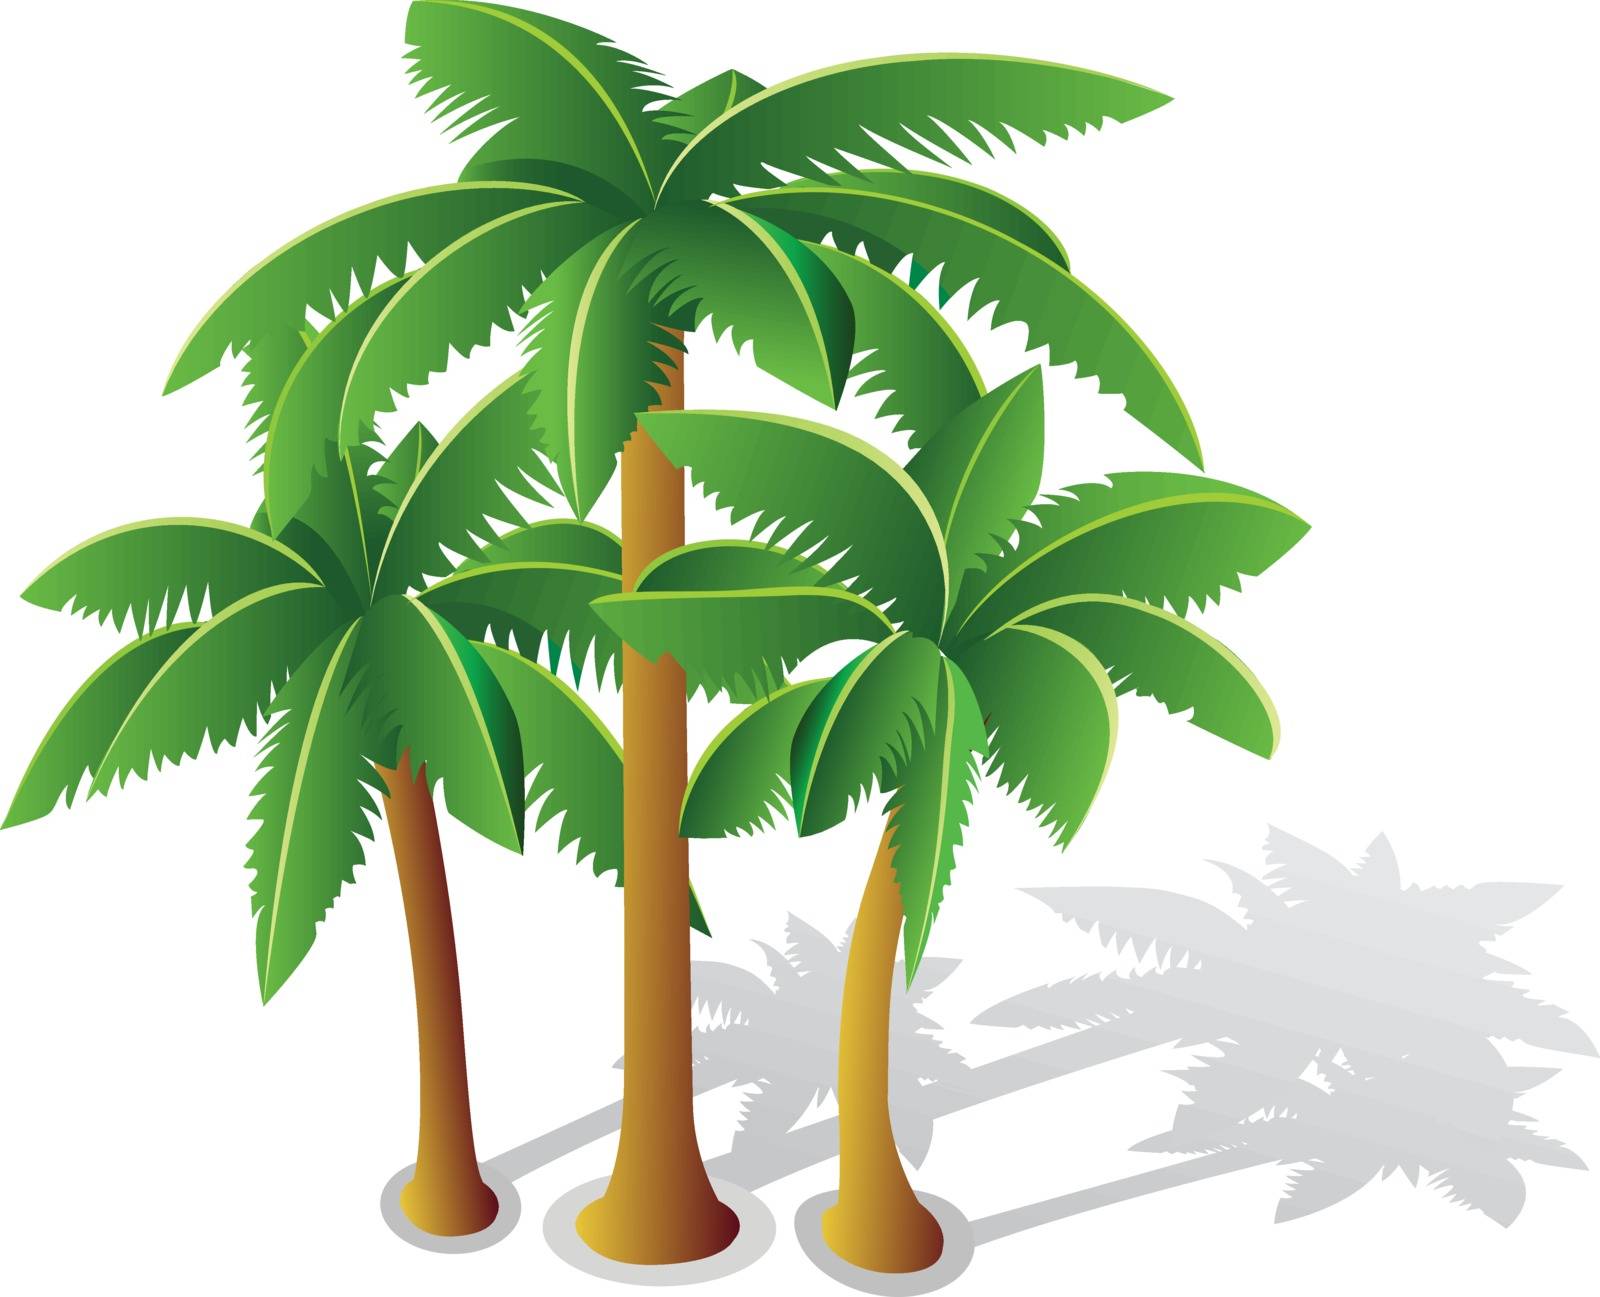 Tropical palms by Alexzel